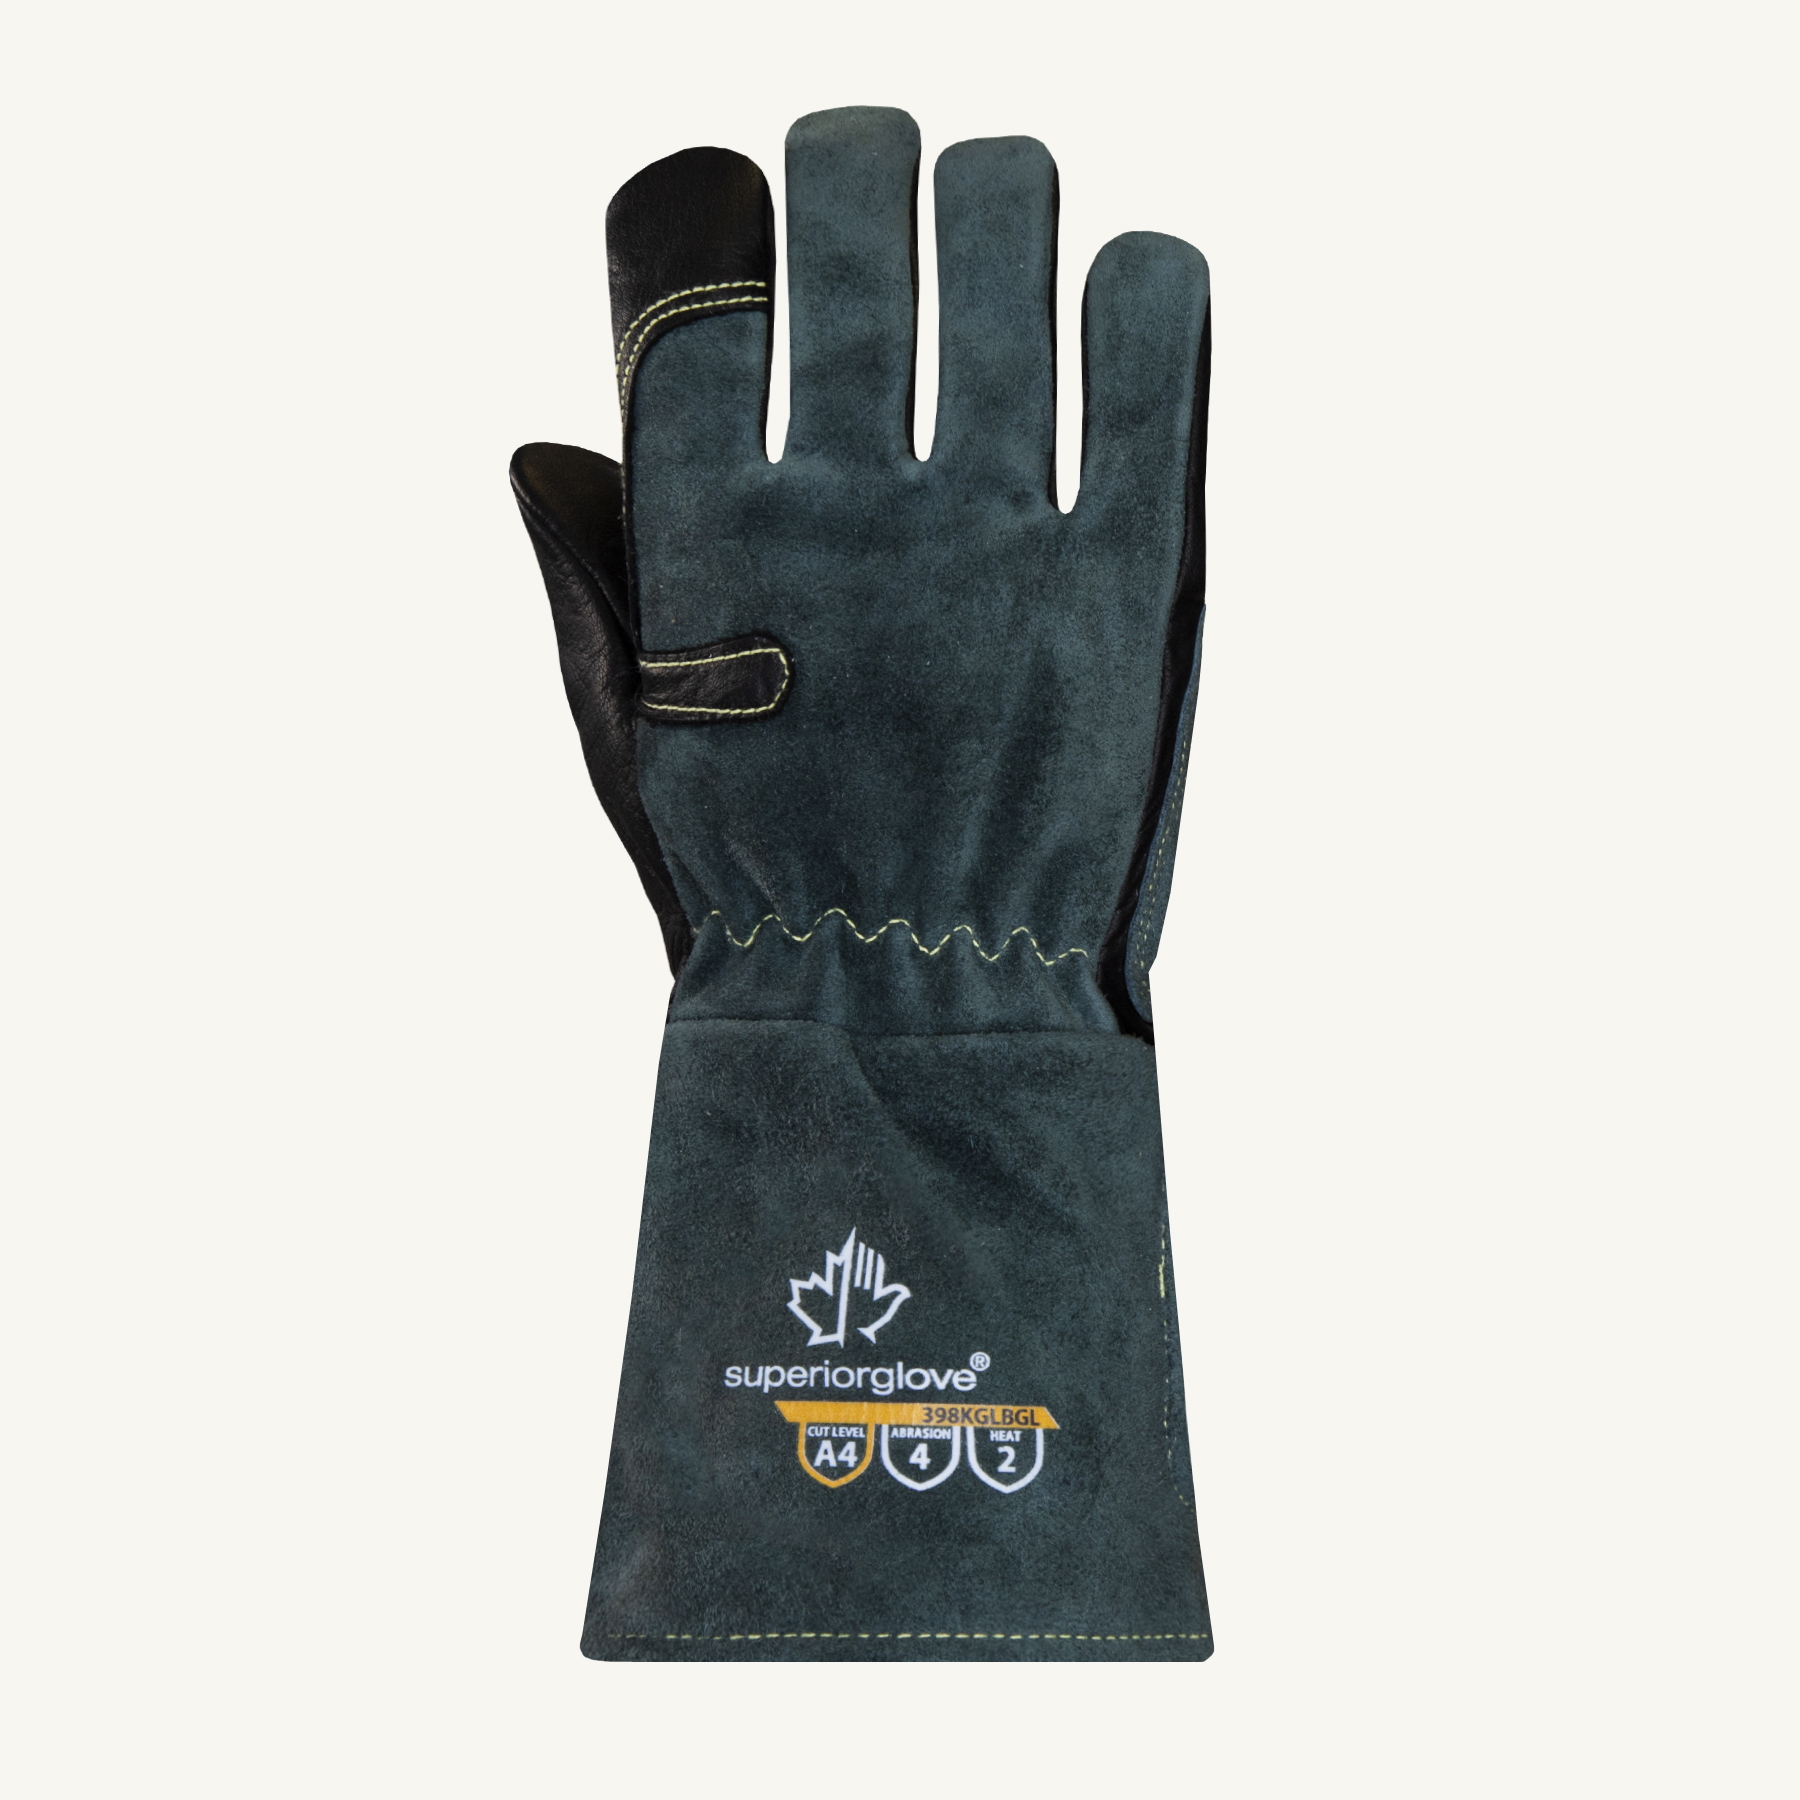 Superior Glove® Endura® 398KGLBGL A4 Cut MIG Welding Gloves, Women's